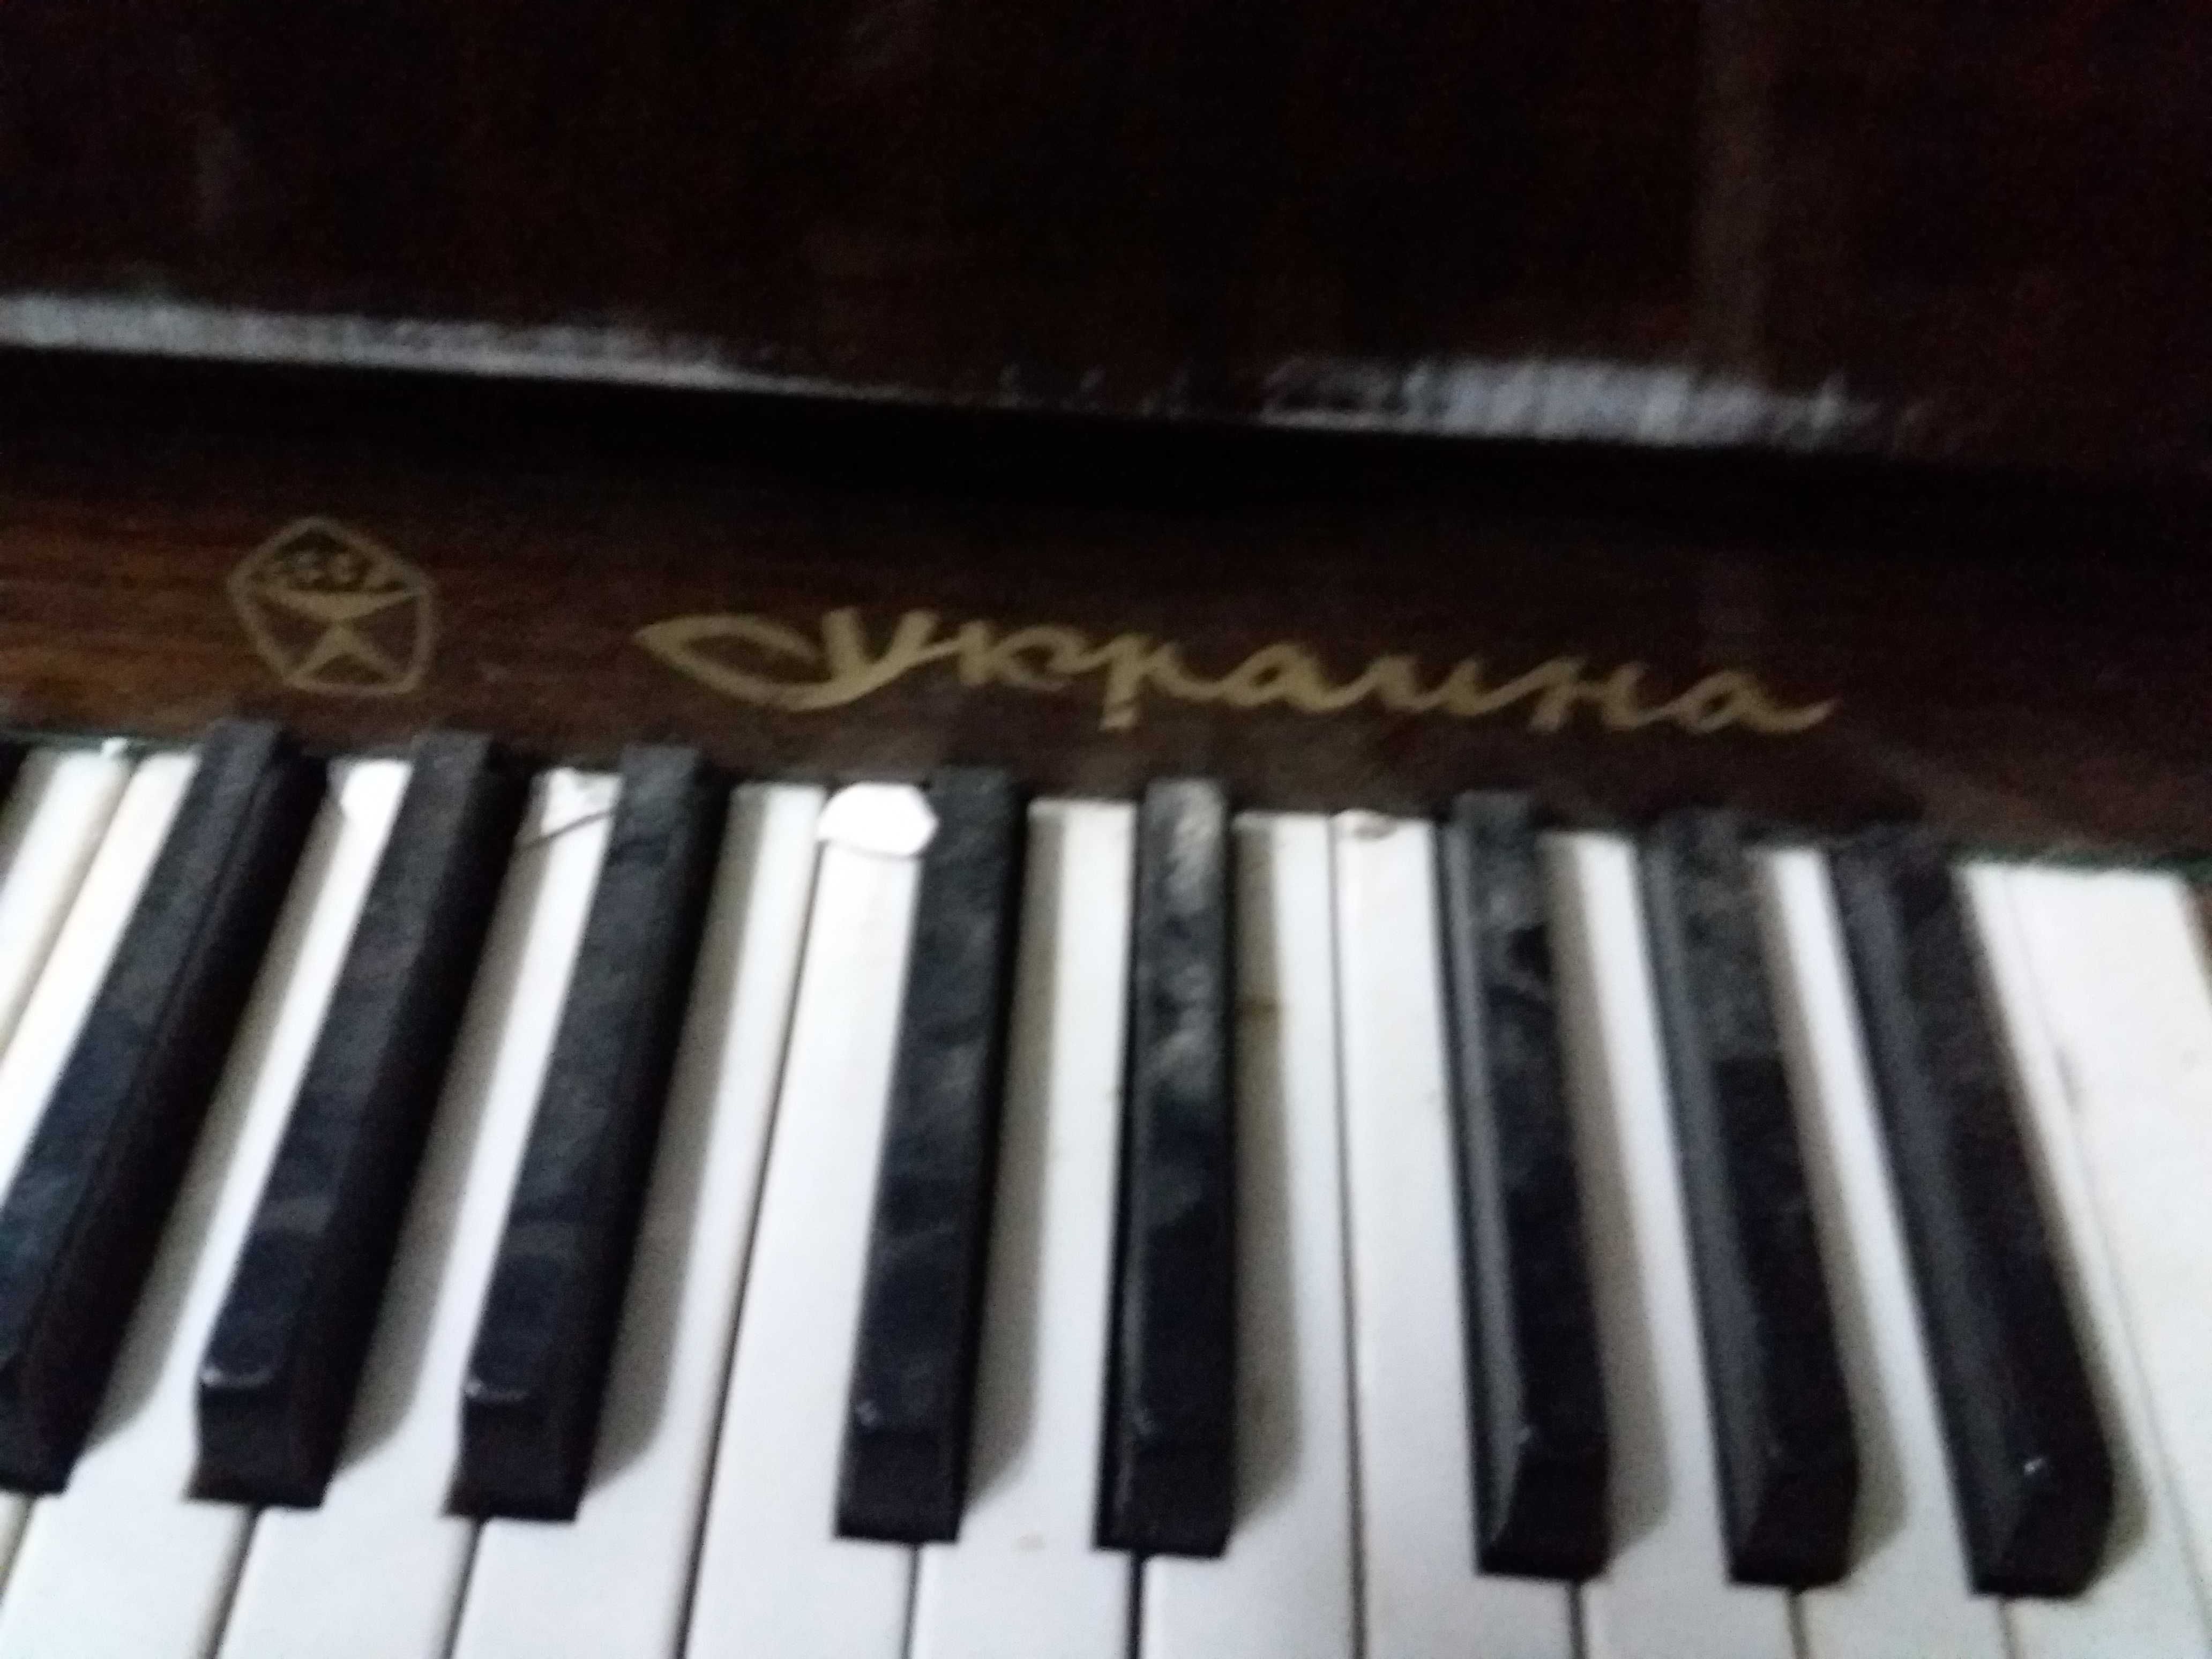 Пианино Украина продам